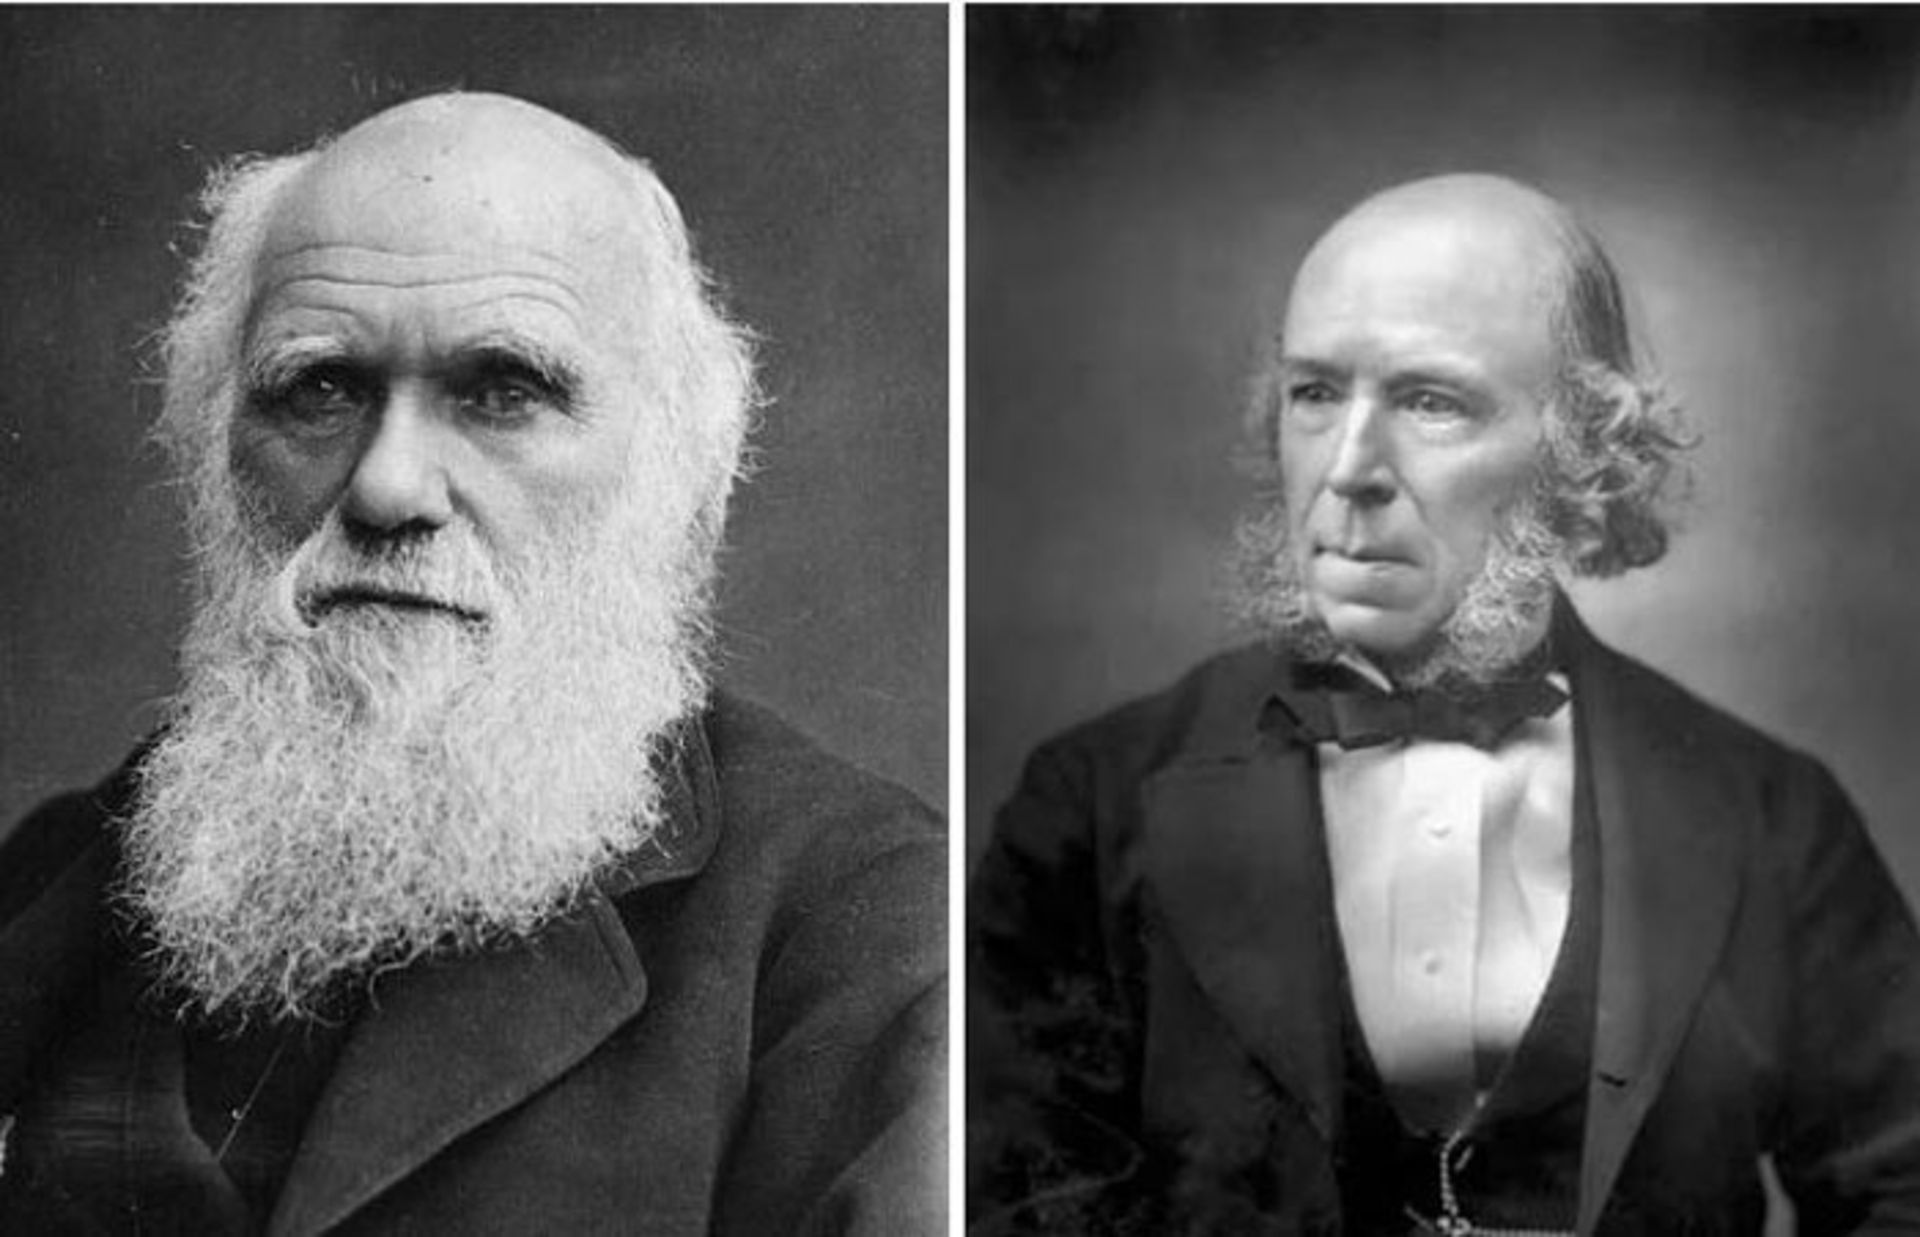 داروین مبدع عبارت بقای اصلح نیست